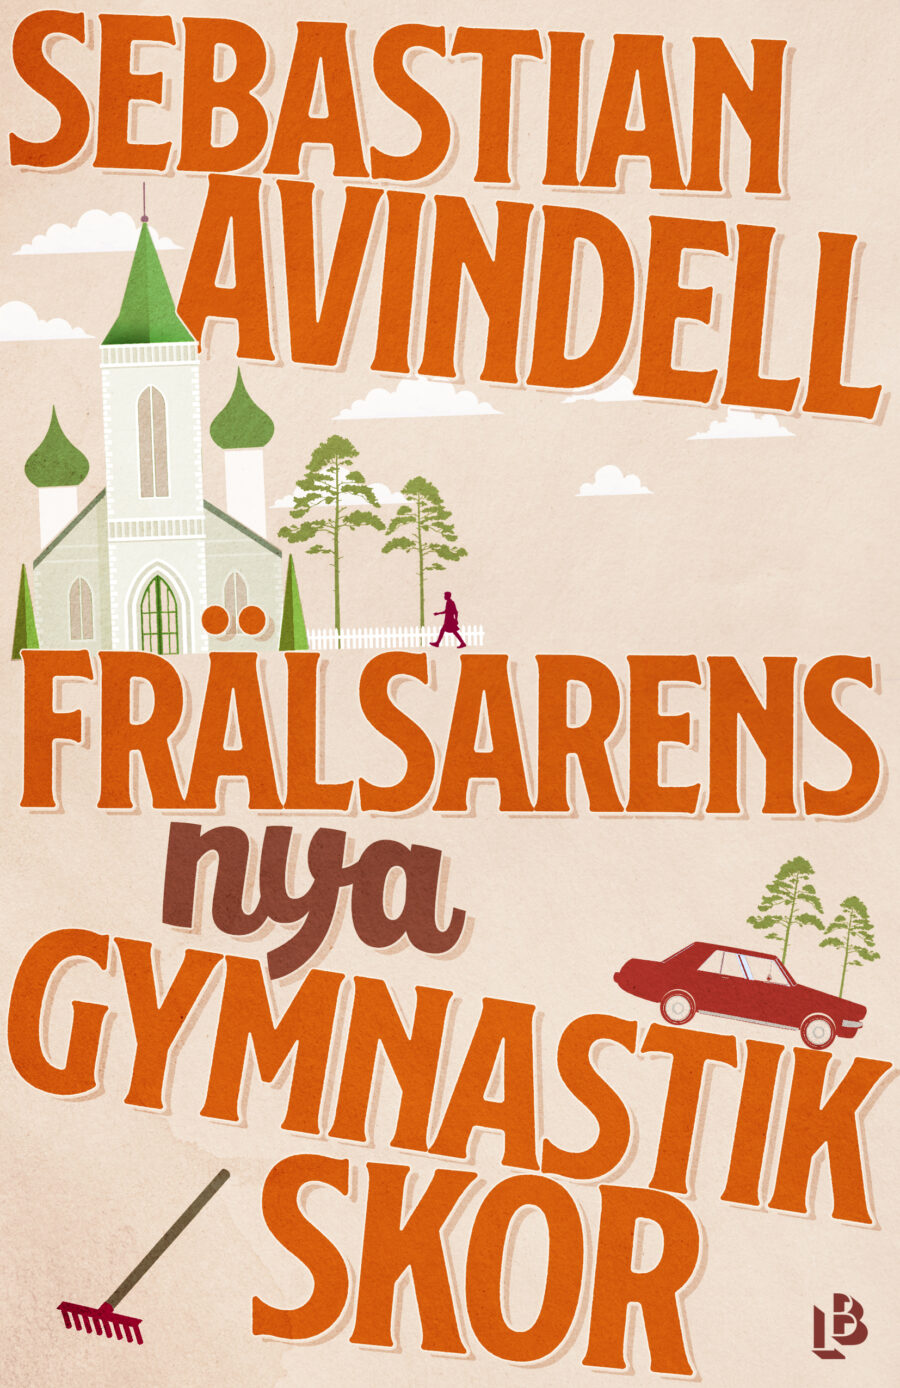 Omslaget till Frälsarens nya gymnastikskor av Sebastian Avindell